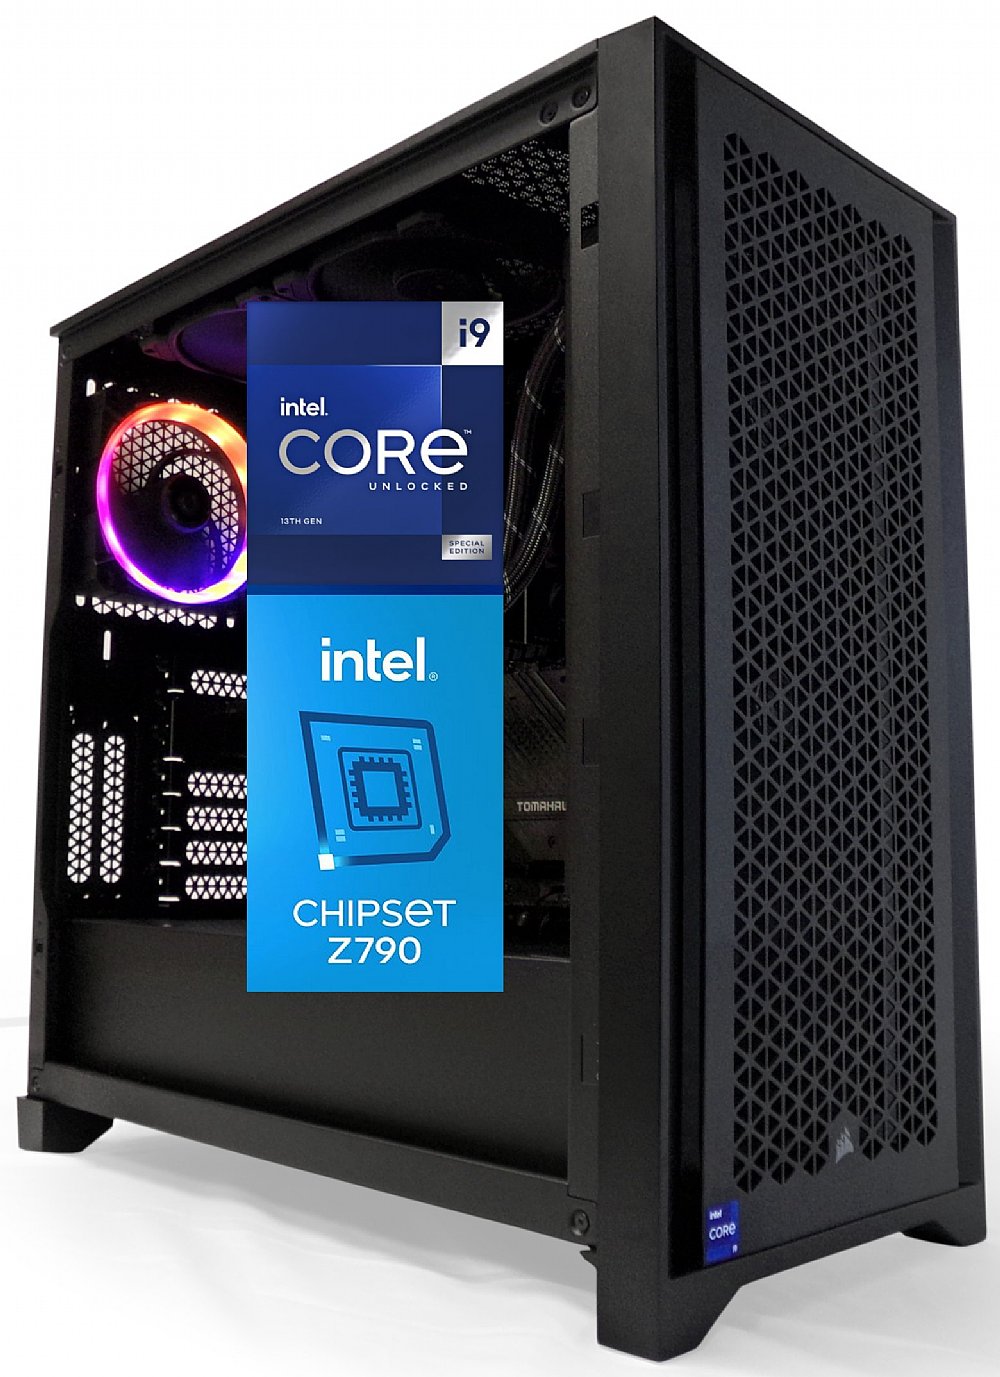 Intel Core i9 Processors - Desktops